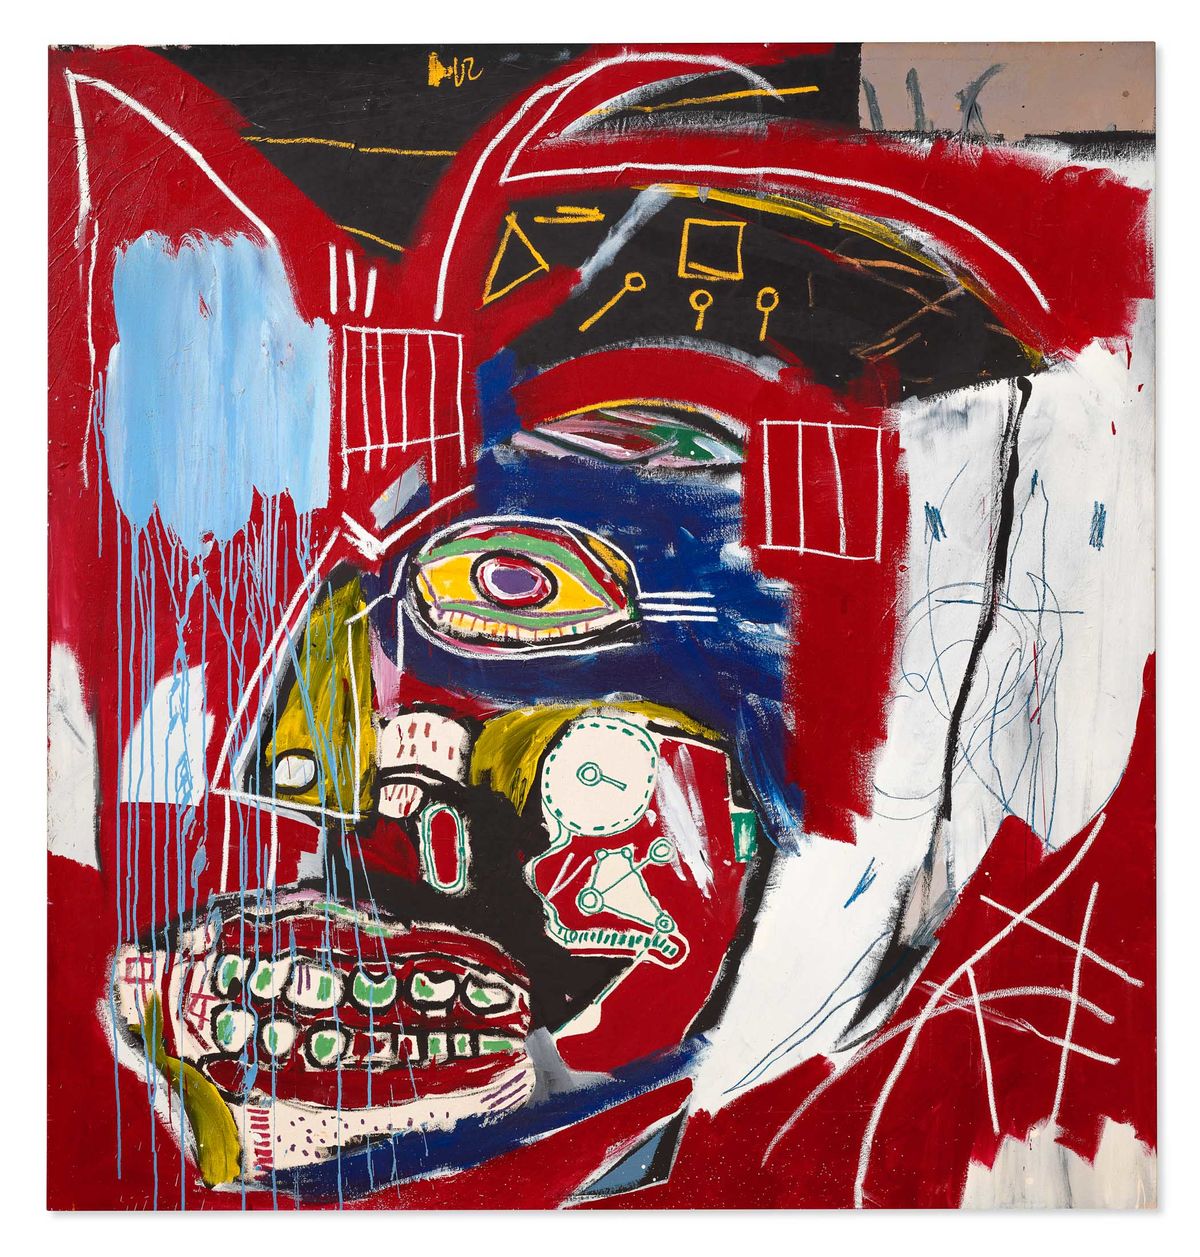 Jean-Michel Basquiat's In This Case, 1983